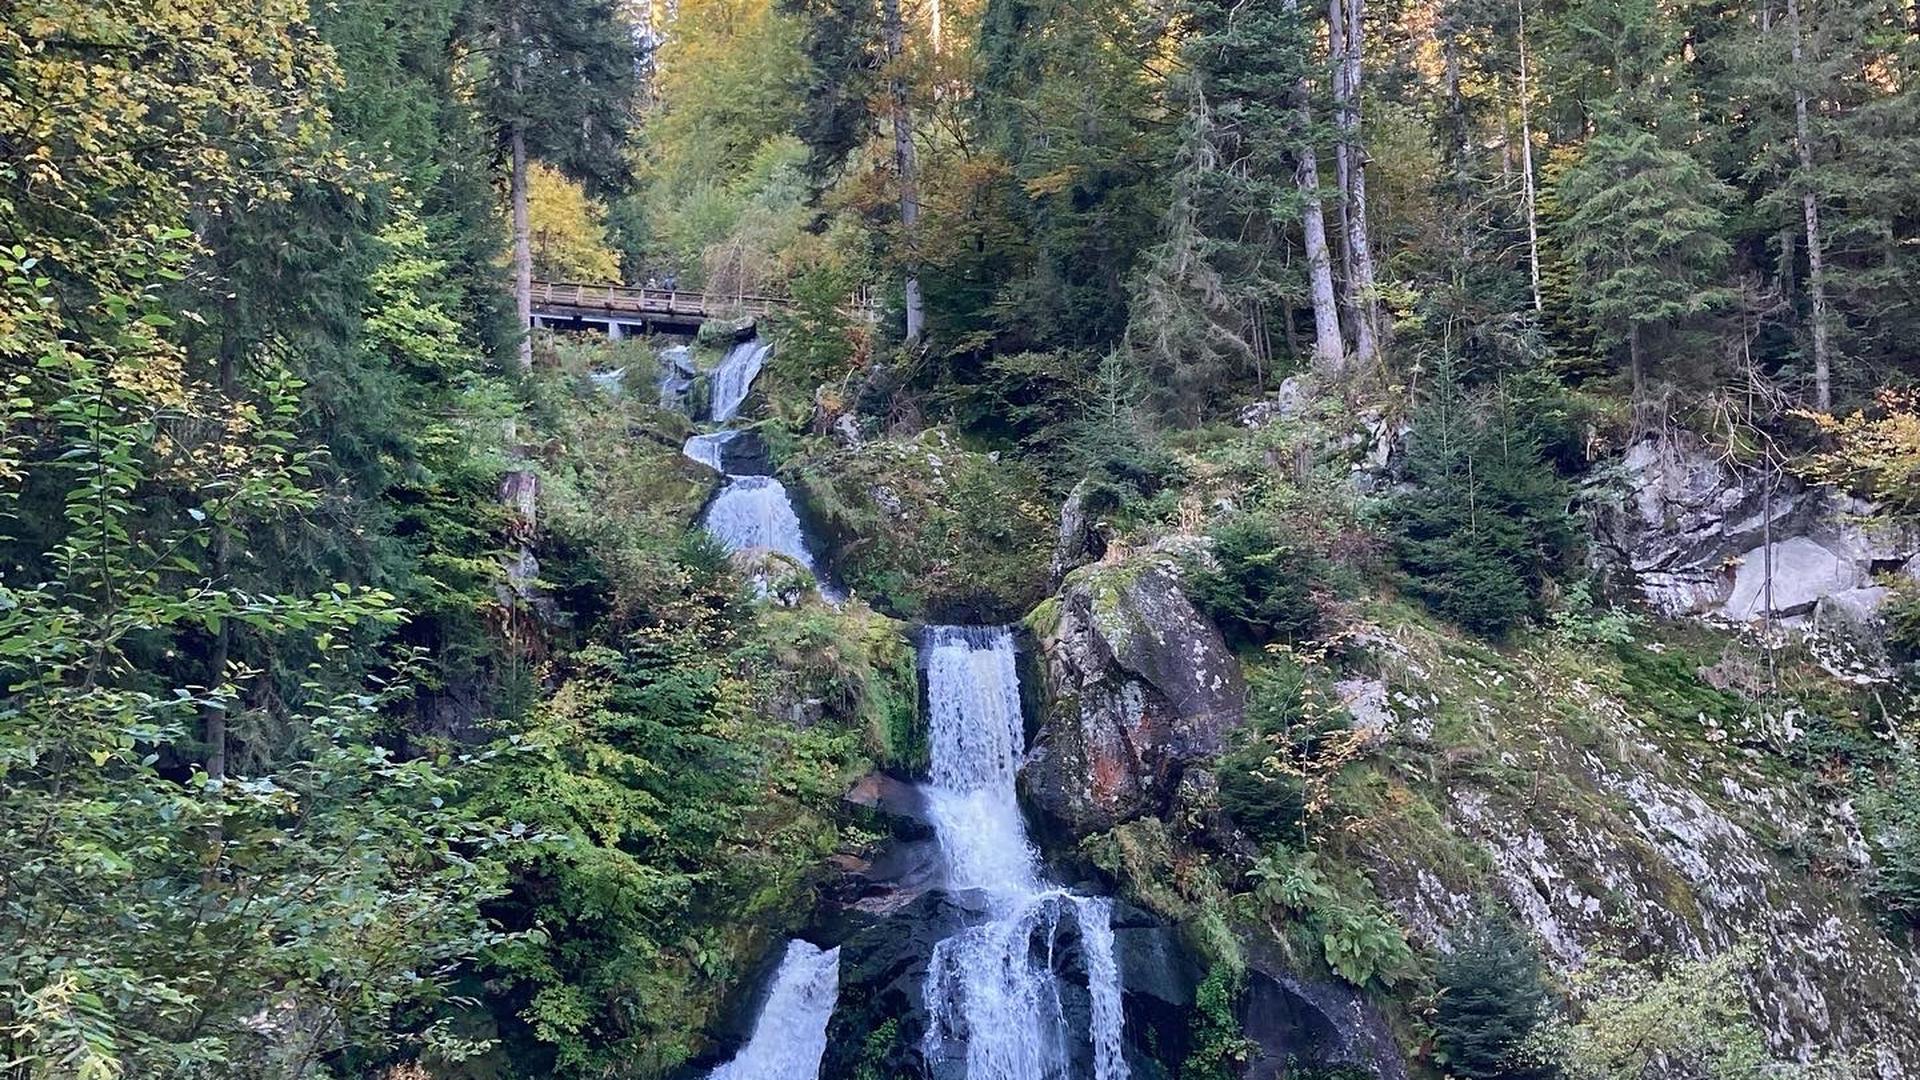 Beliebtes Ausflugsziel: Die Triberger Wasserfälle im Schwarzwald zählen zu den höchsten Wasserfällen in Deutschland. Insgesamt fällt das Wasser der Gutach 163 Meter in die Tiefe. 